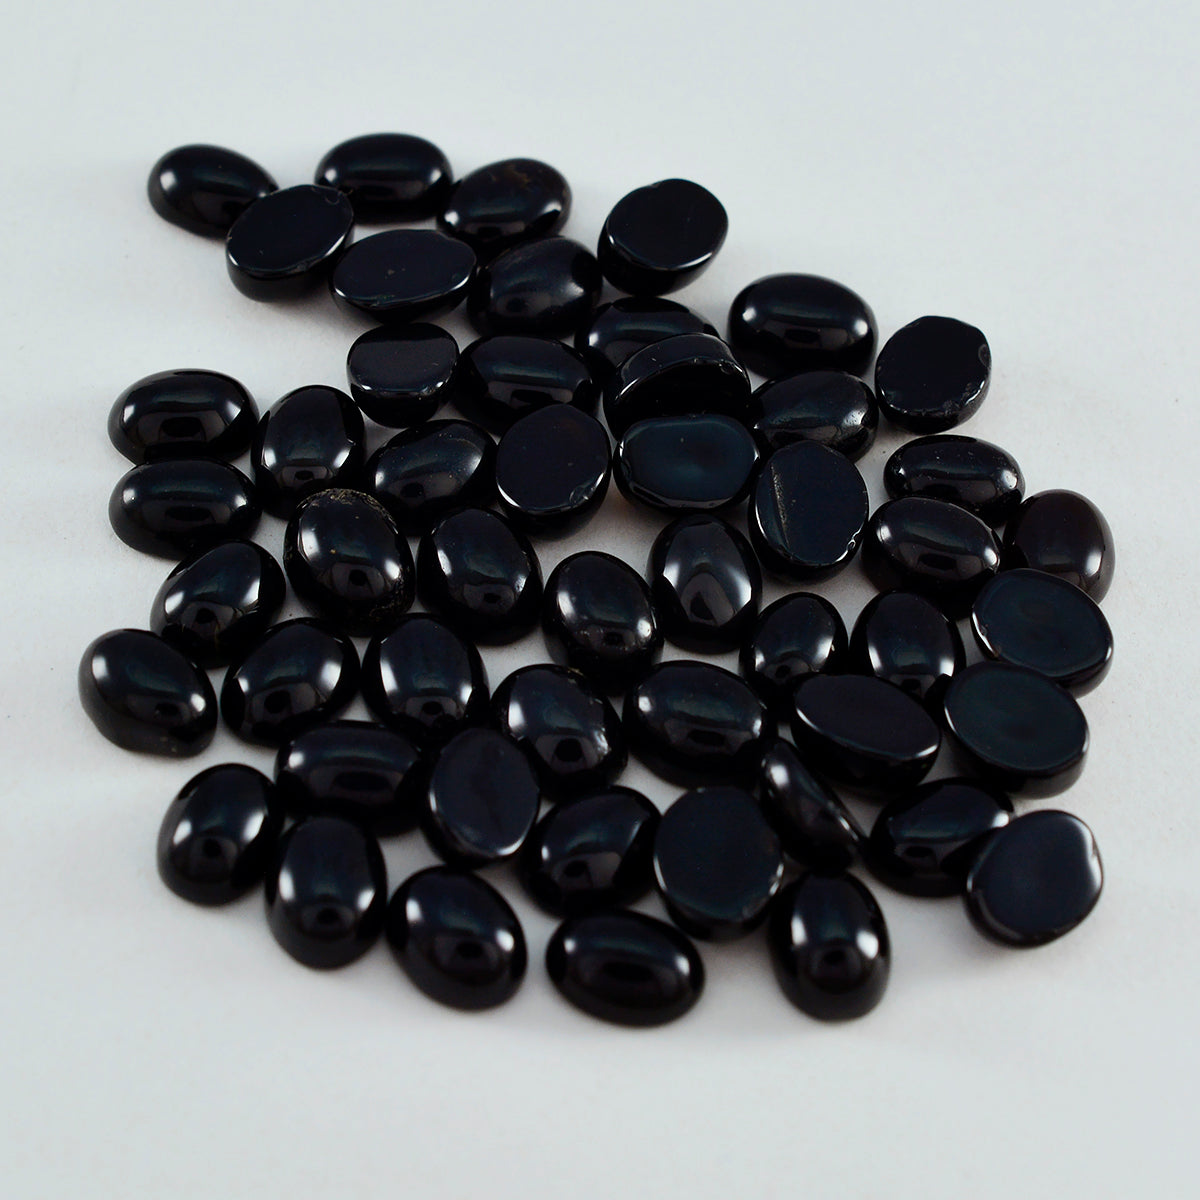 Riyogems 1 pieza cabujón de ónix negro 4x6mm forma ovalada gemas de calidad atractivas